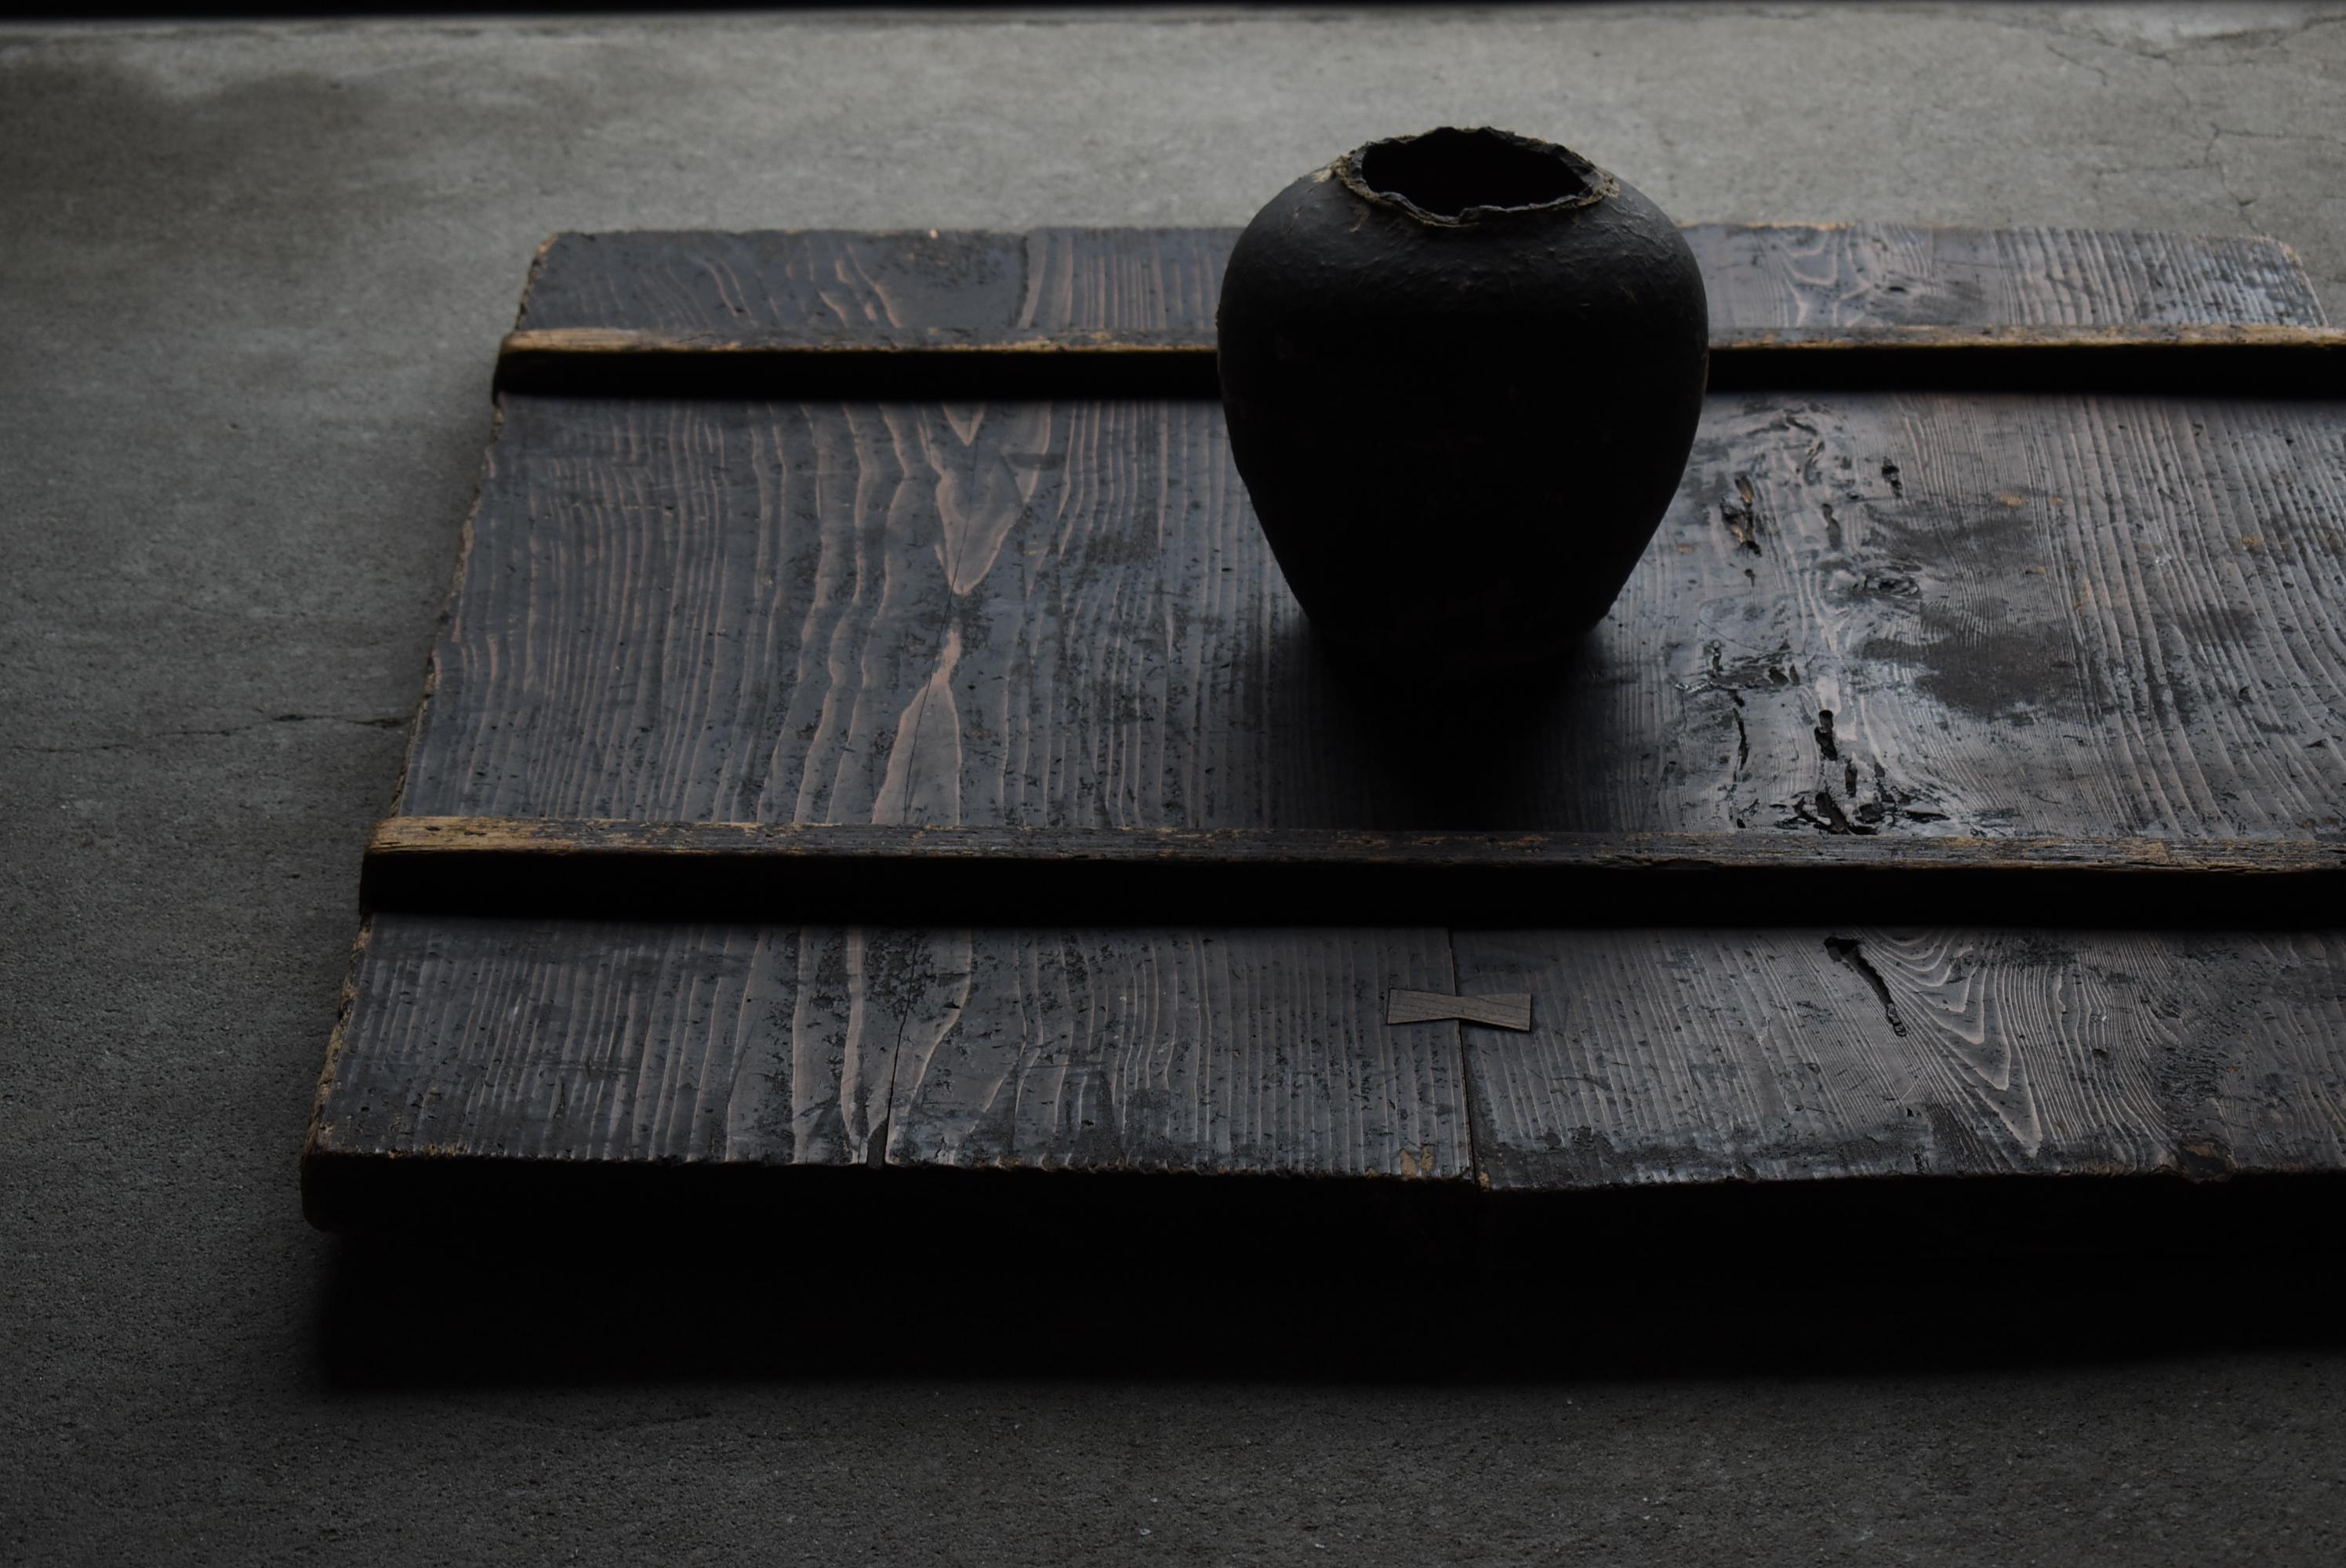 Japanese Antique Wabi Sabi Wooden Board 1860s-1900s / Exhibition Stand Mingei 14